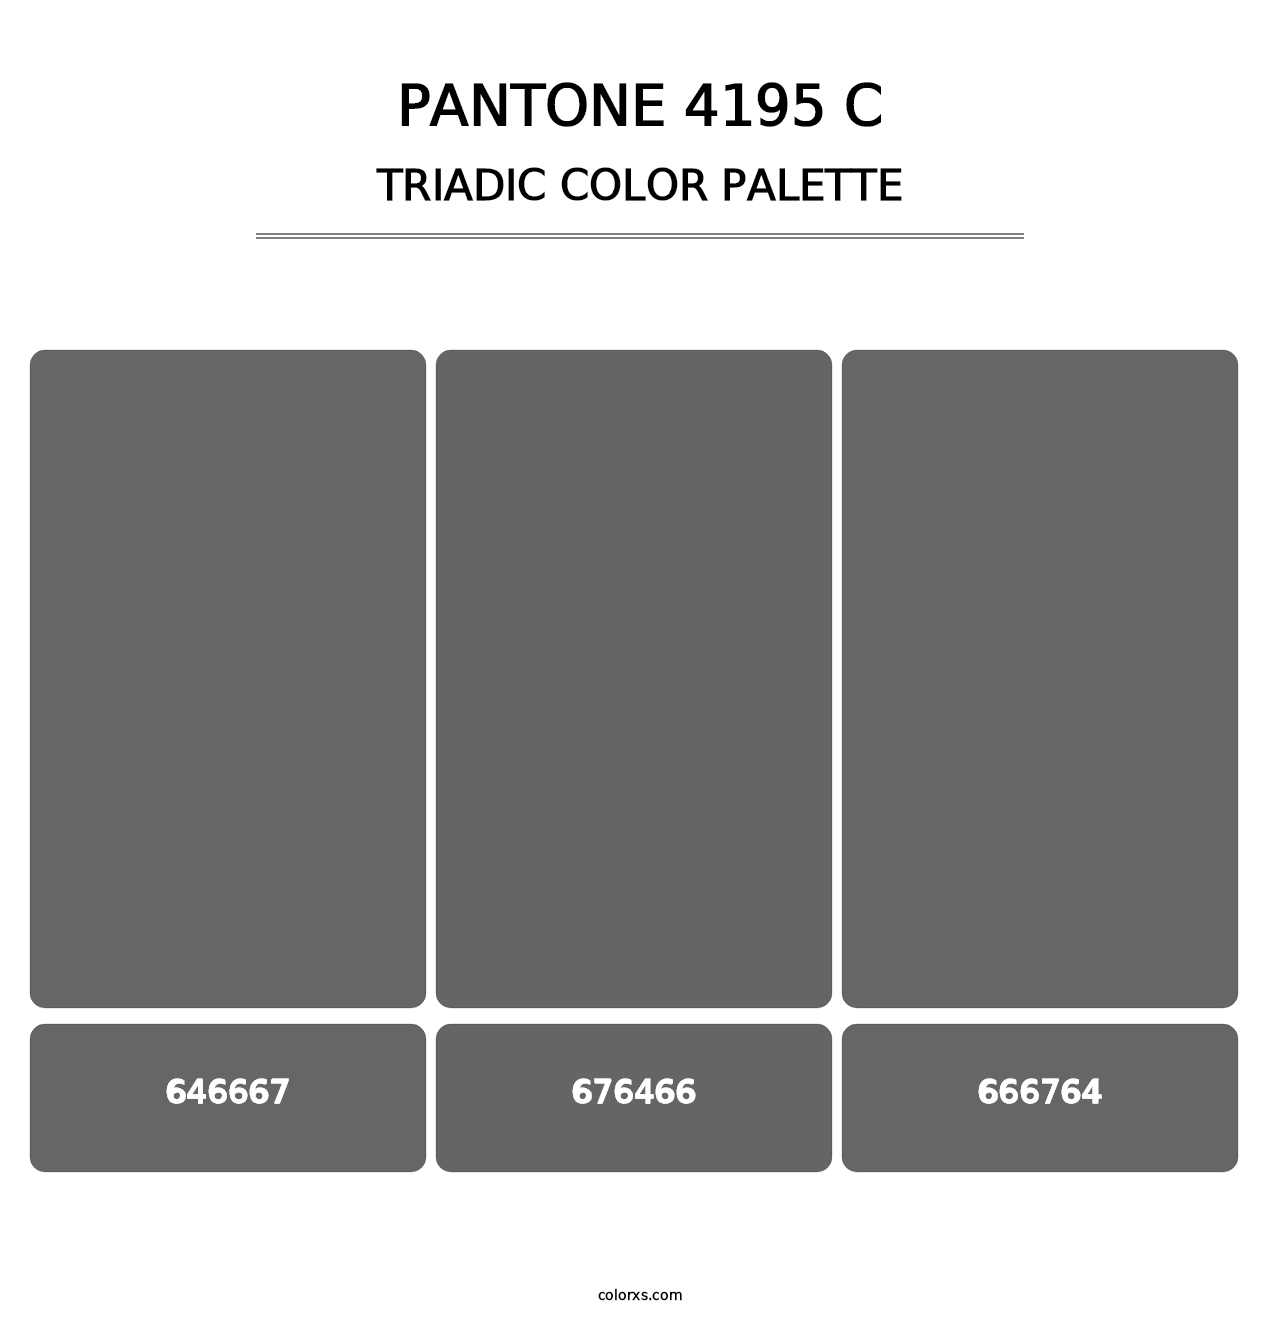 PANTONE 4195 C - Triadic Color Palette